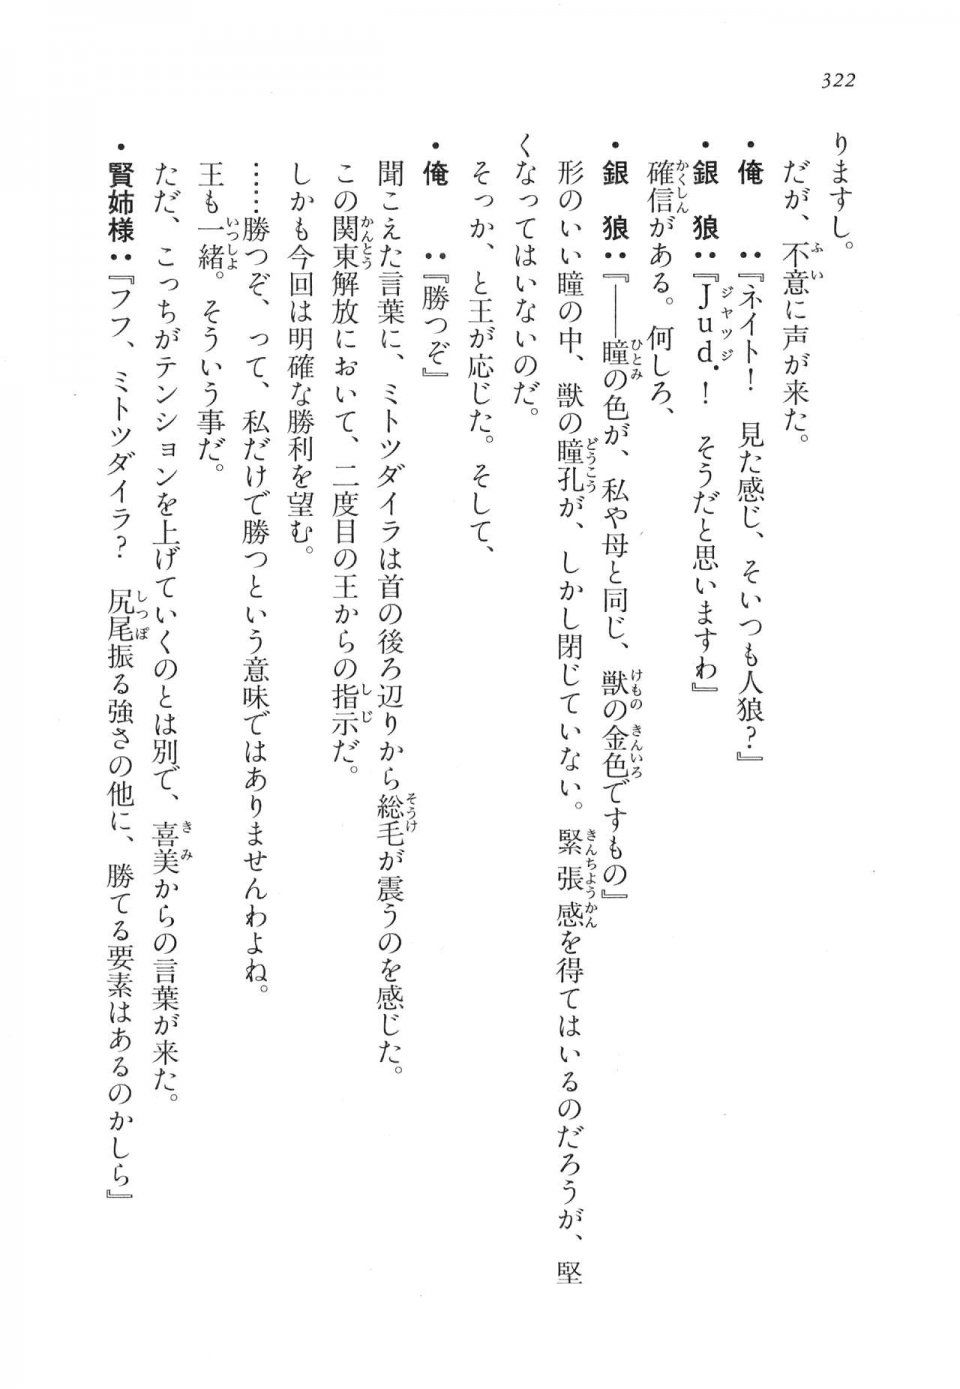 Kyoukai Senjou no Horizon LN Vol 17(7B) - Photo #322